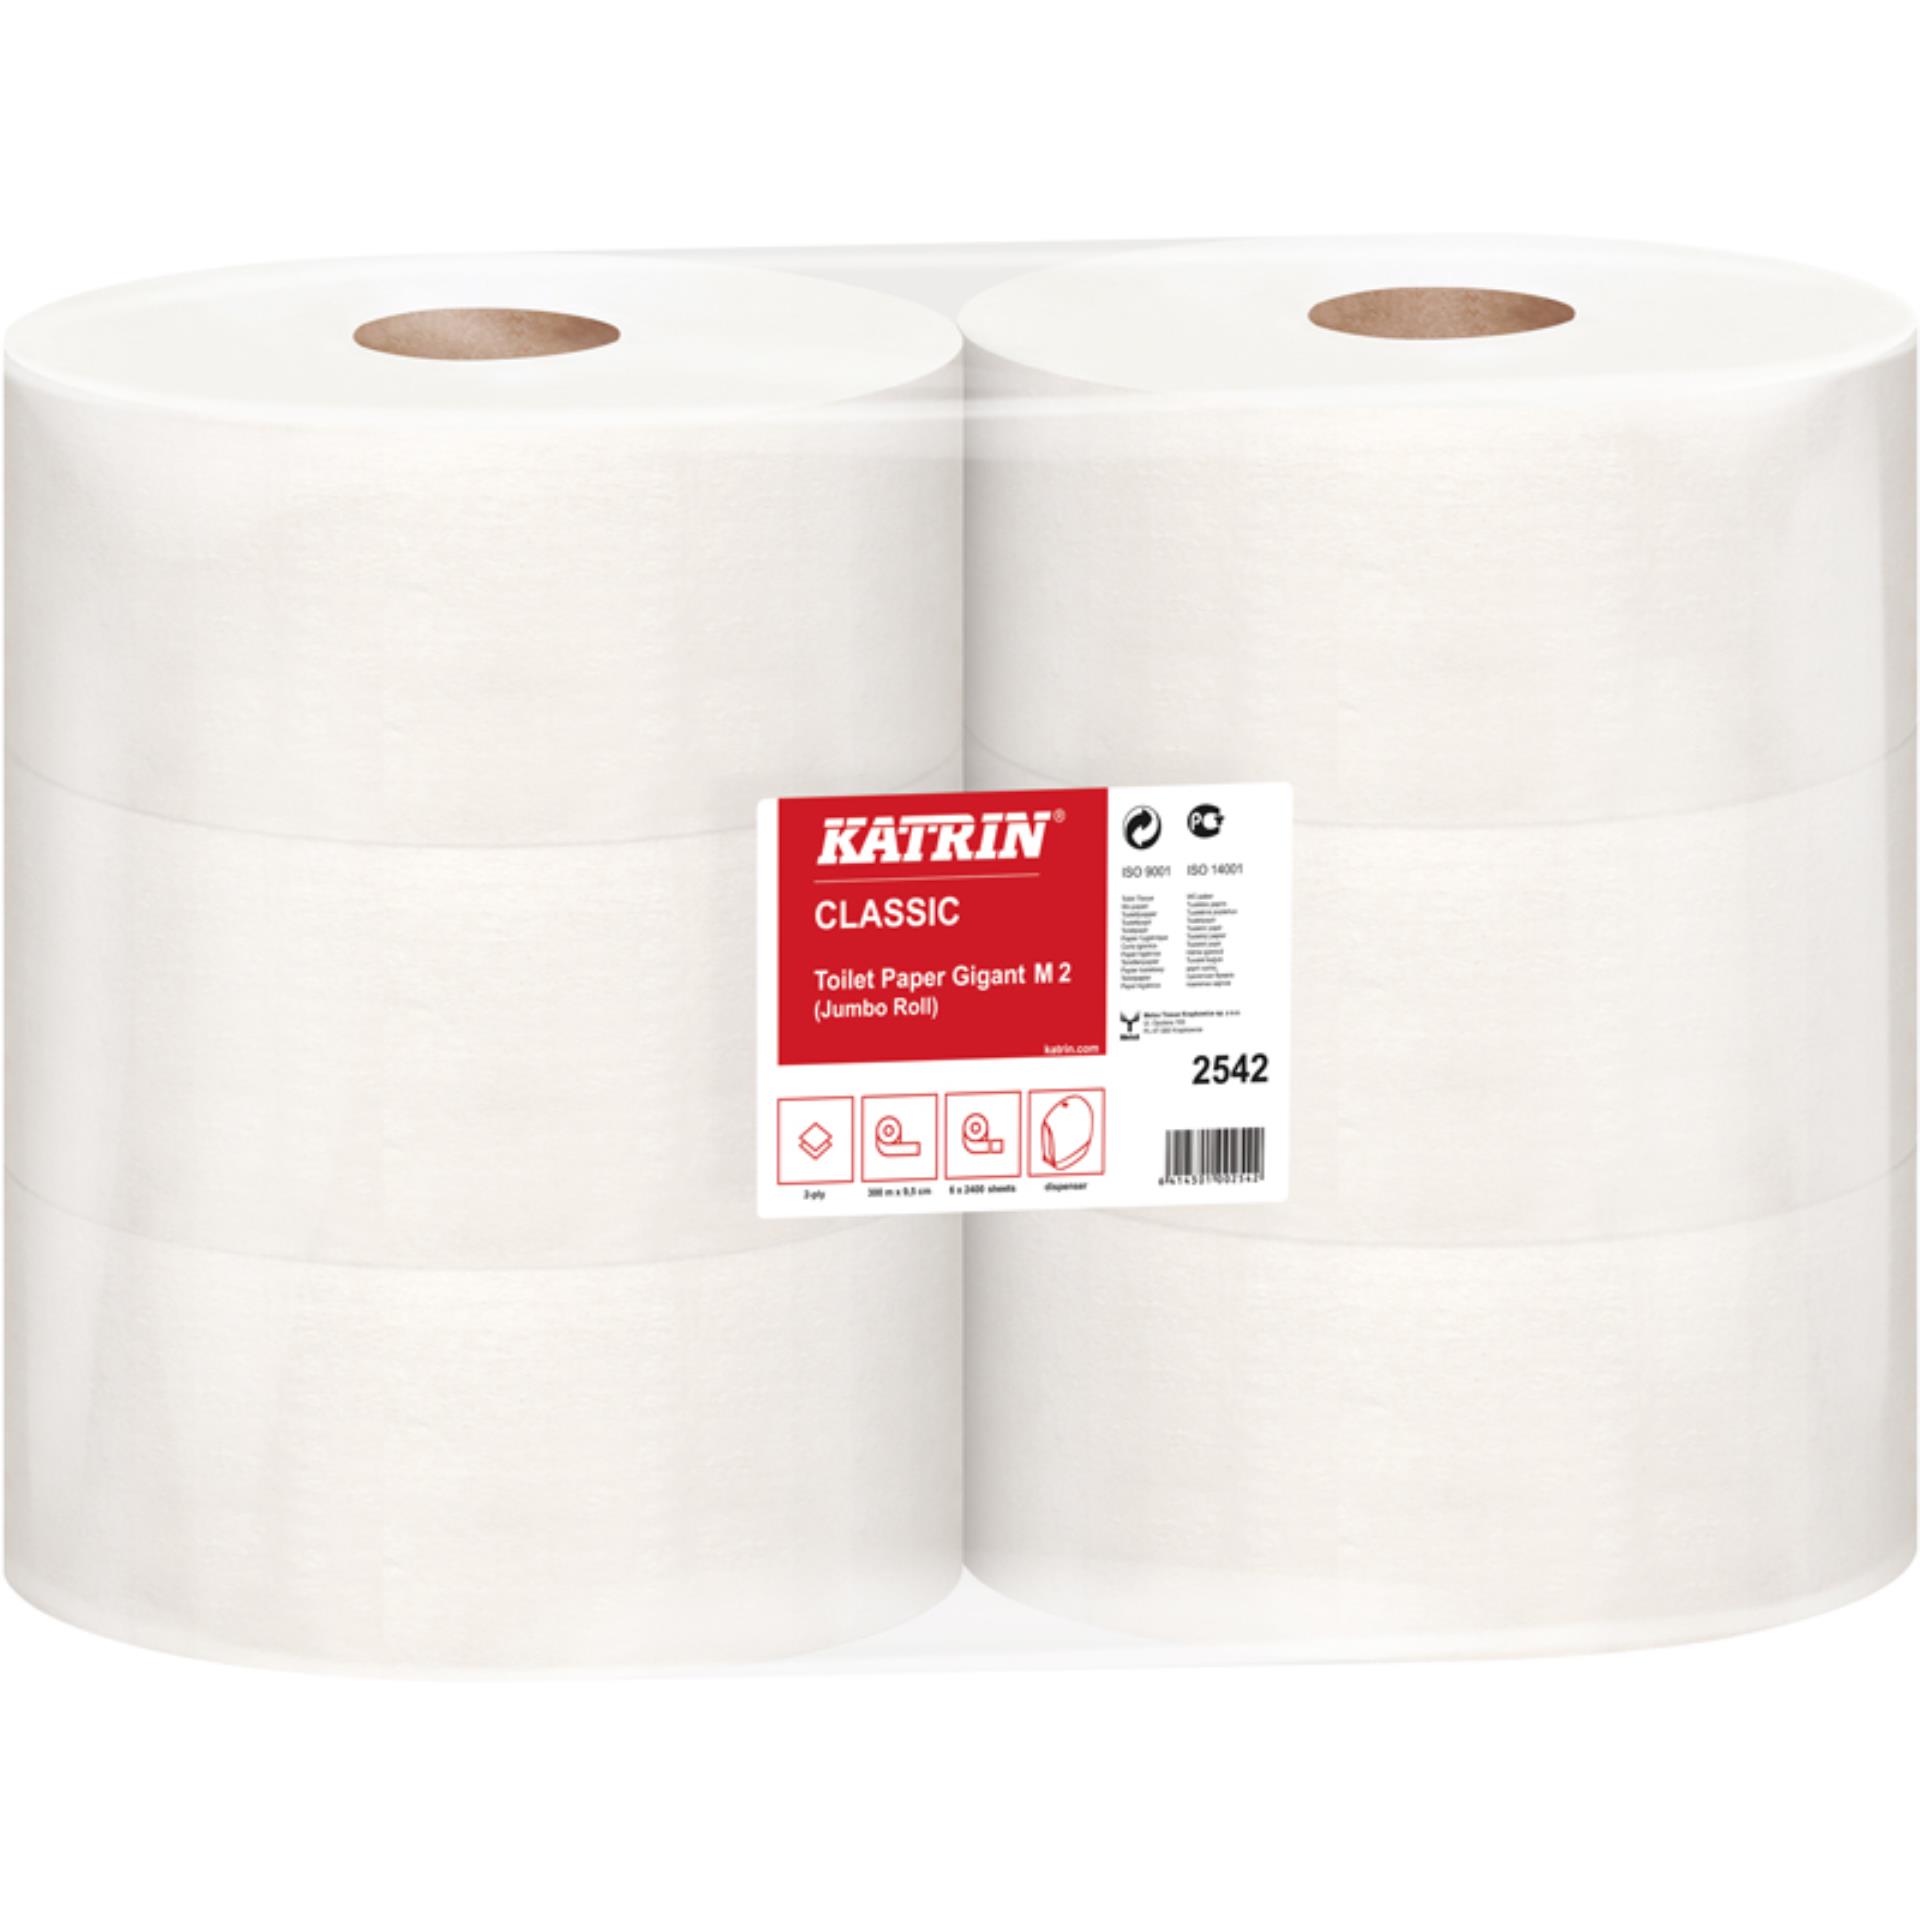 Toaletní papír Katrin Gigant M2 - 2 vrstvý, 6 rolí